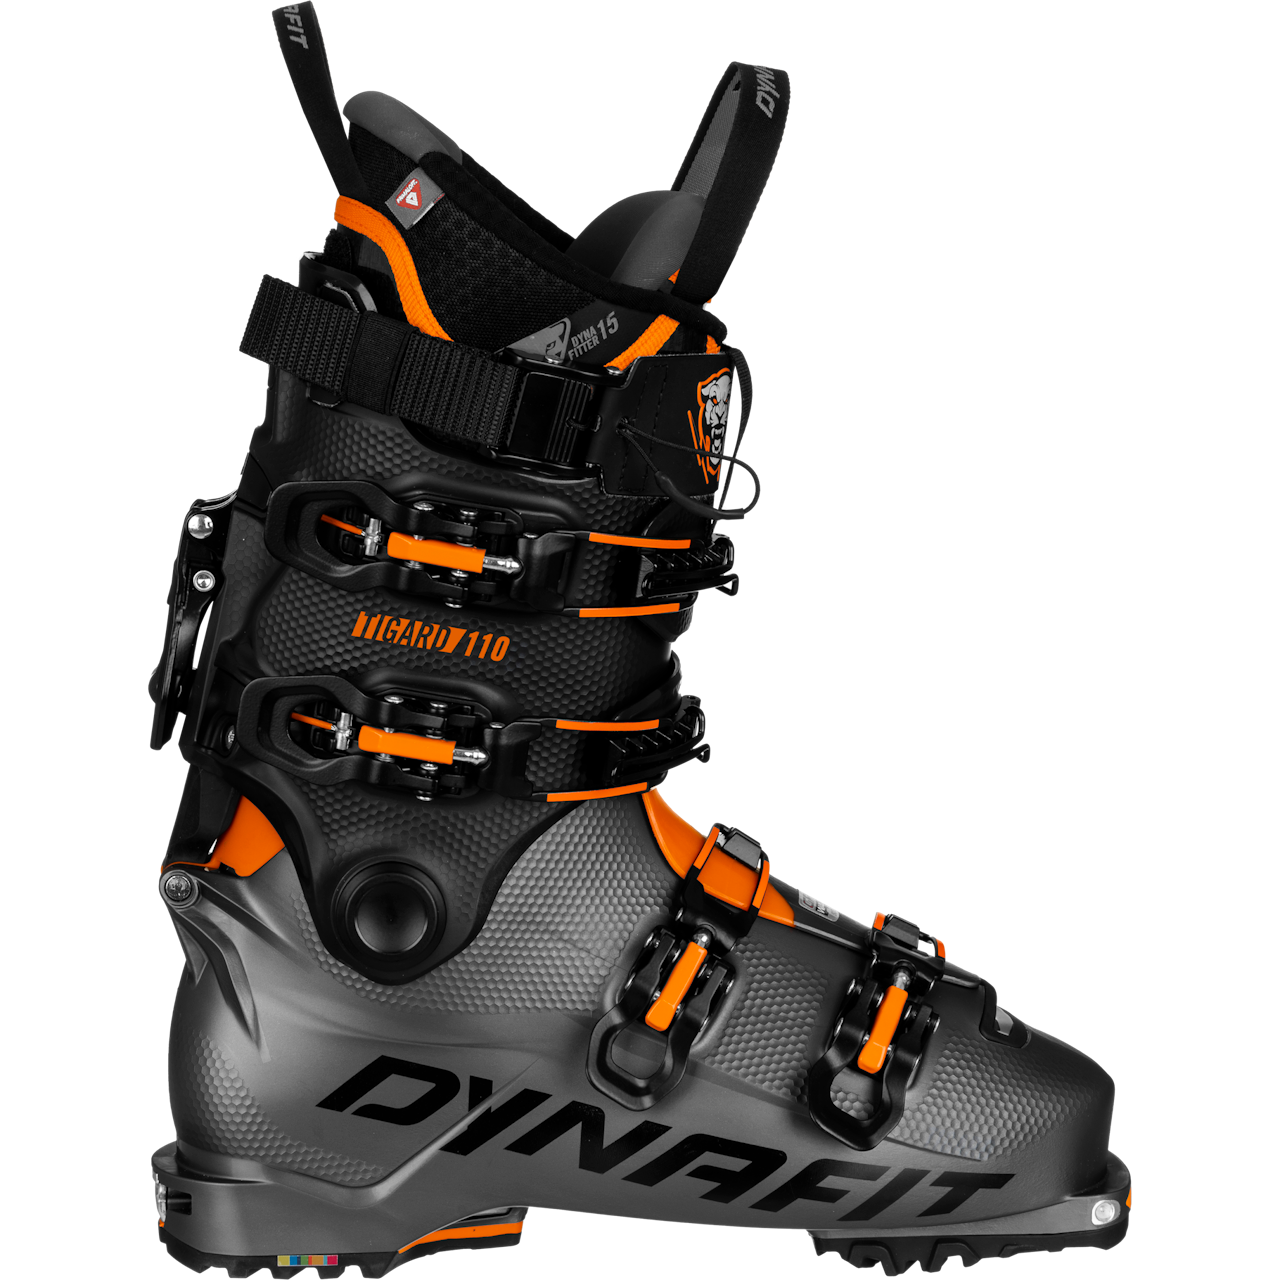 Dynafit Tigard 110 Ski Boots